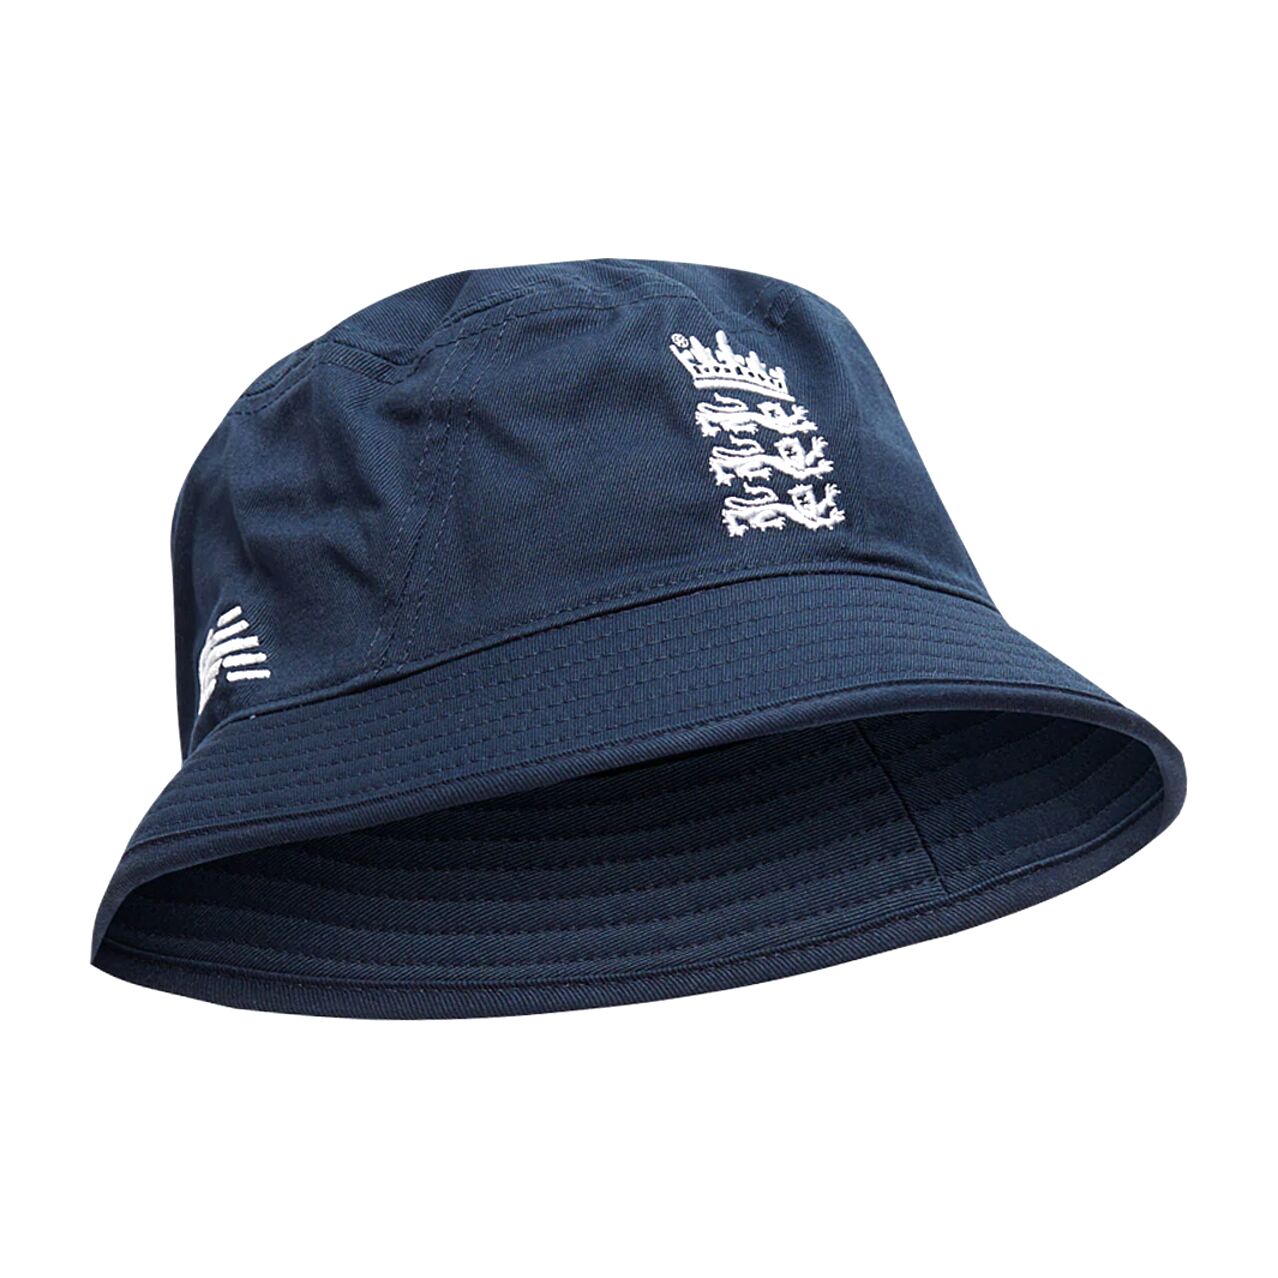 England Bucket Hat for sale in UK | 69 used England Bucket Hats